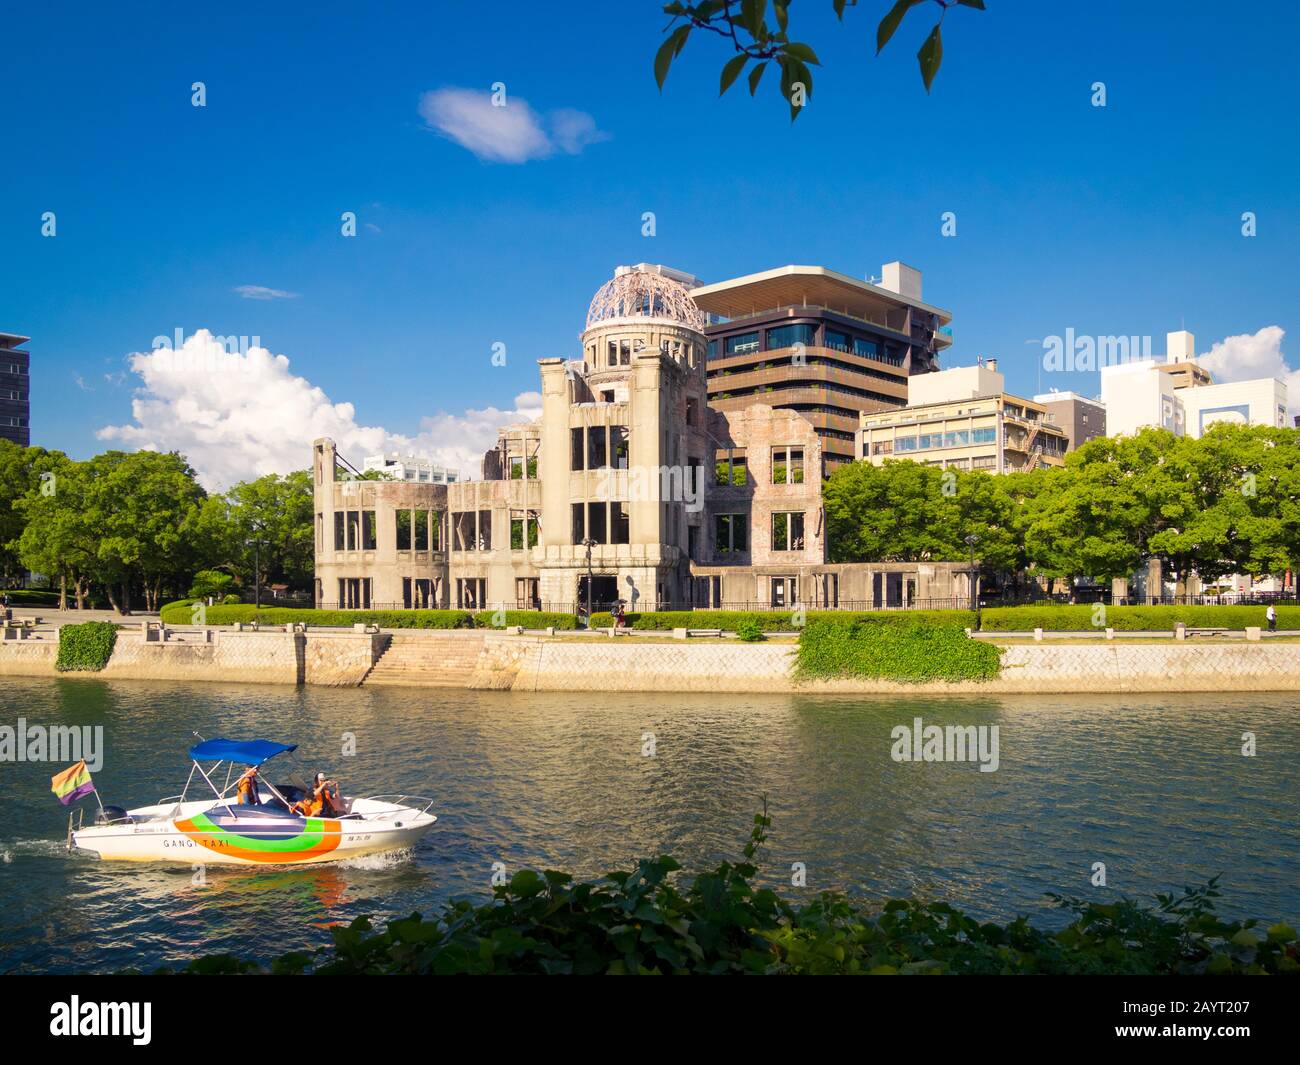 Das Friedensdenkmal von Hiroshima (Genbaku Dome, Atomic Bomb Dome oder A-Bomb Dome). Auch ein Gangi-Wassertaxi auf dem Ota-Fluss in Hiroshima, Japan. Stockfoto